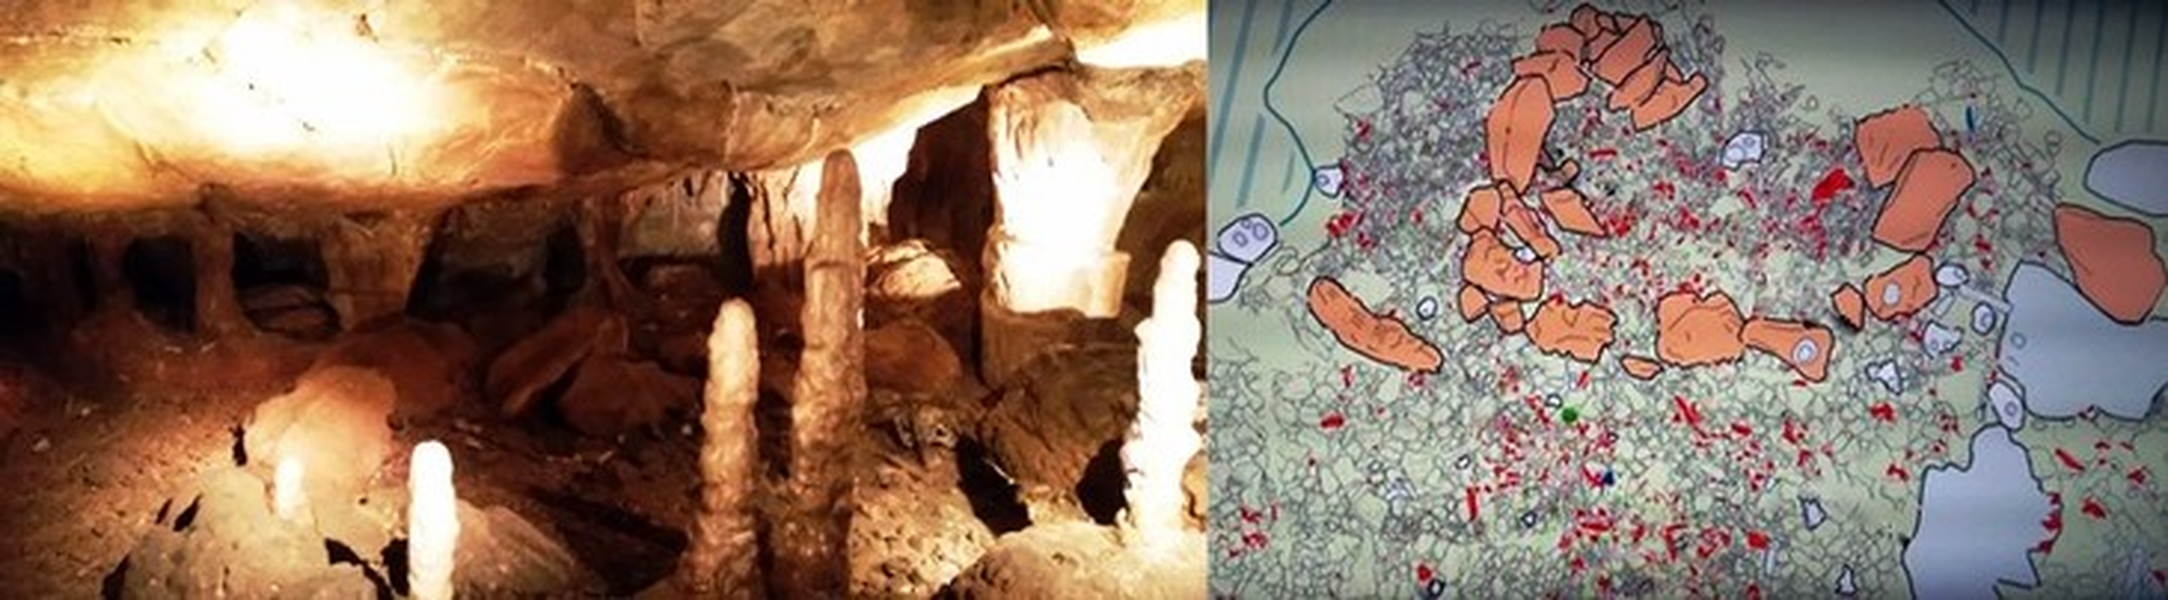 Phát hiện hang động 16.000 năm, chứa đựng kho báu của loài người